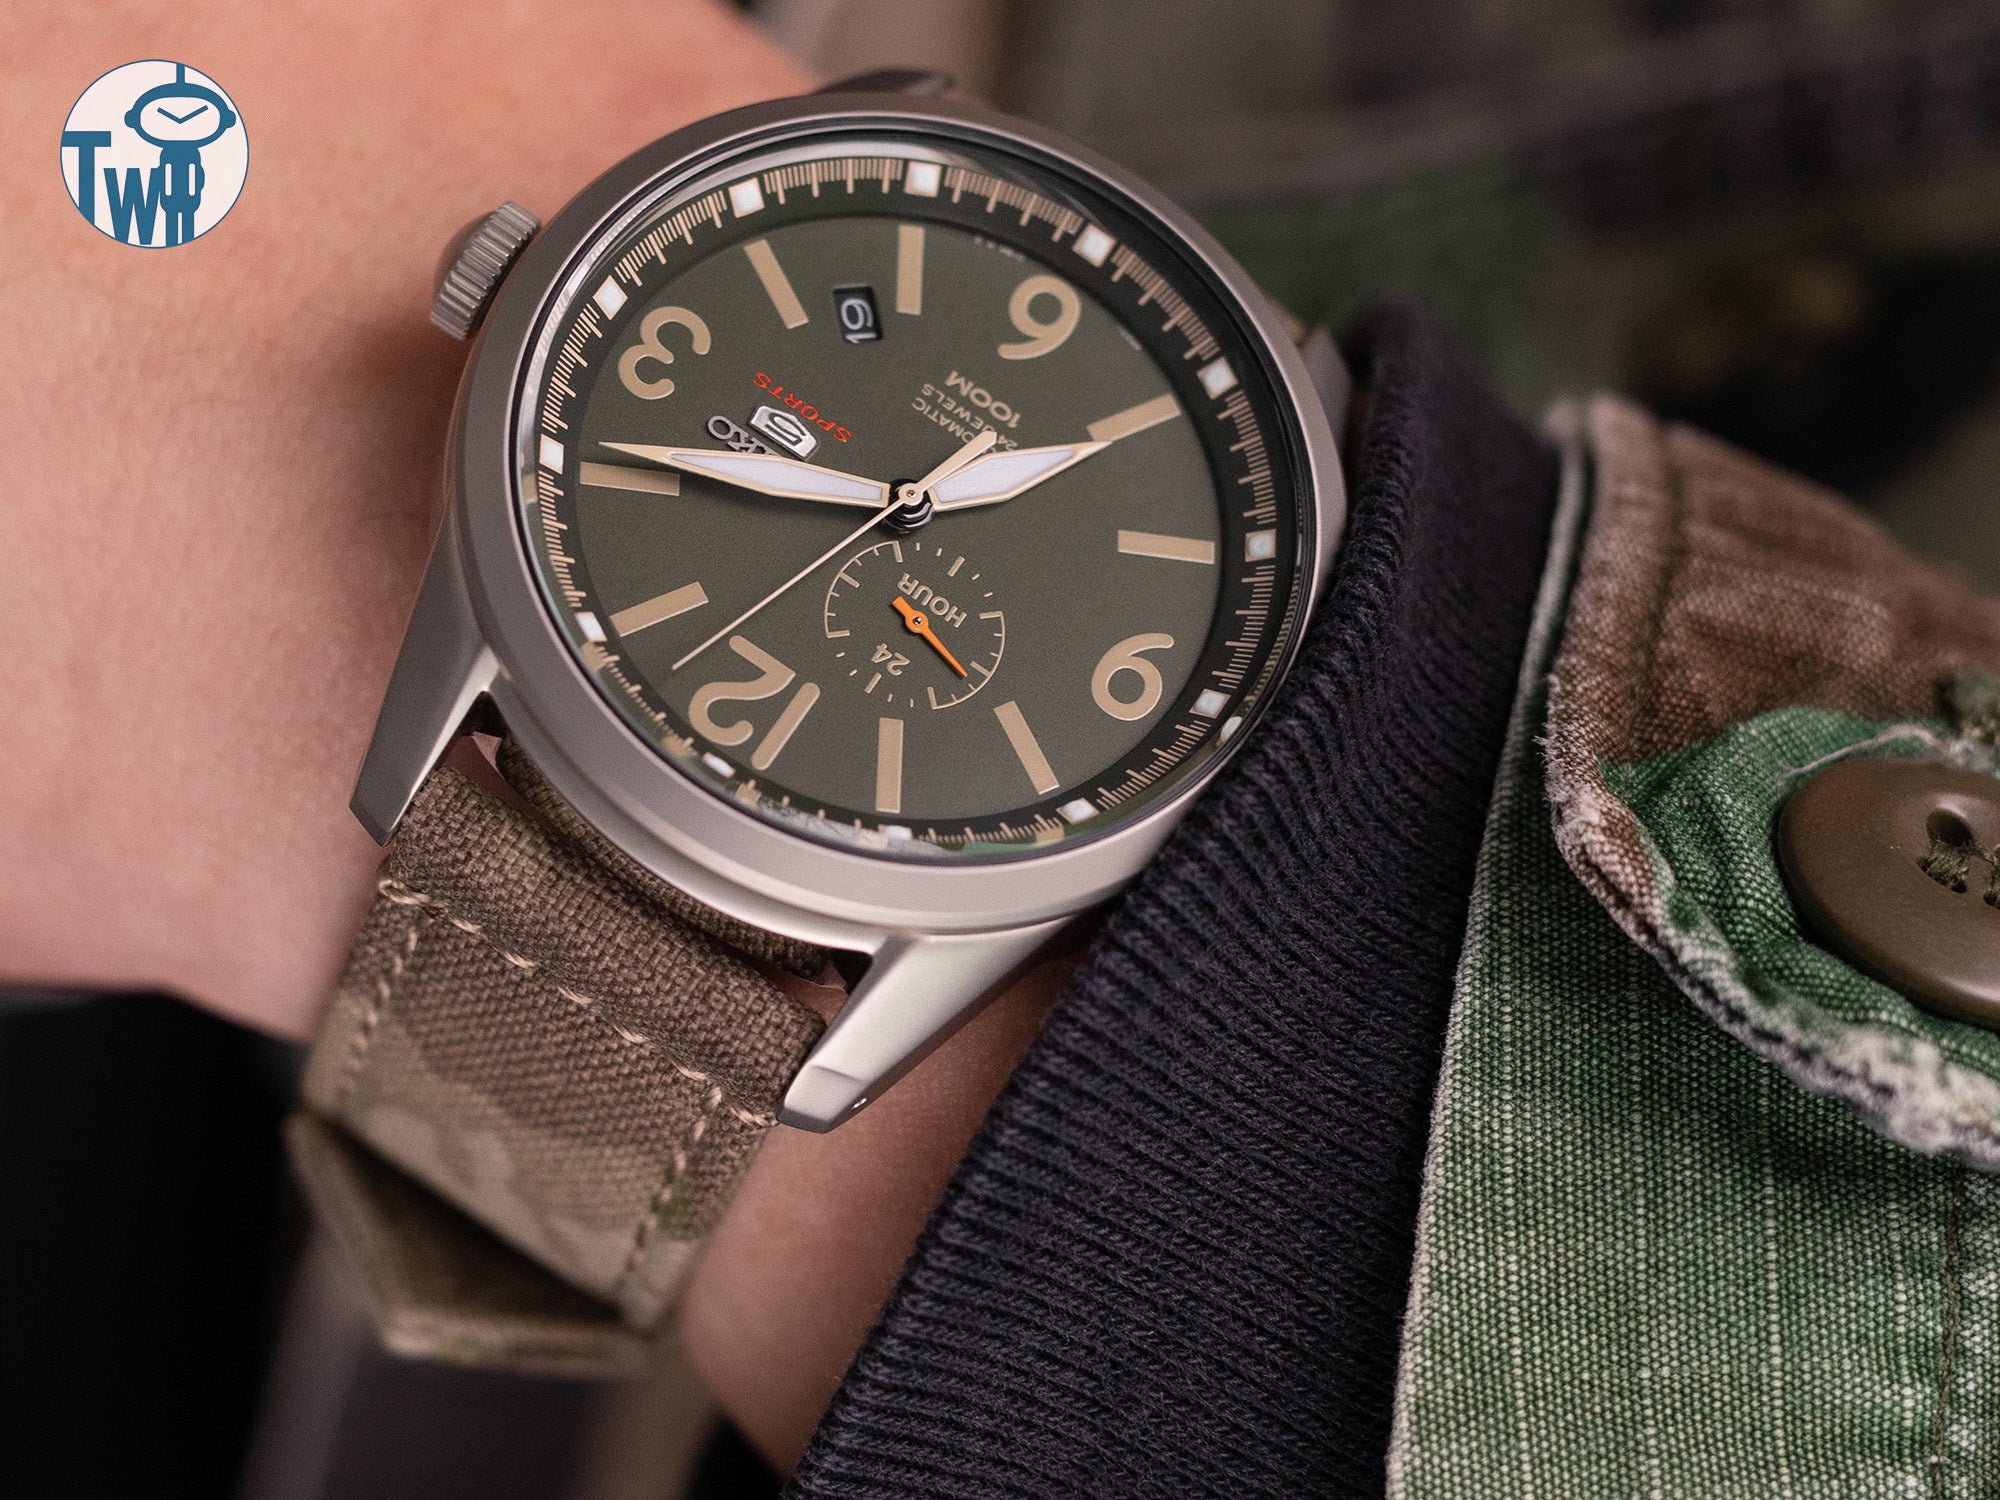 Seiko精工 5 Sports 野戰系列 SSA299K1 搭配 太空人腕時計TW的WW2 二戰系列迷彩錶帶。